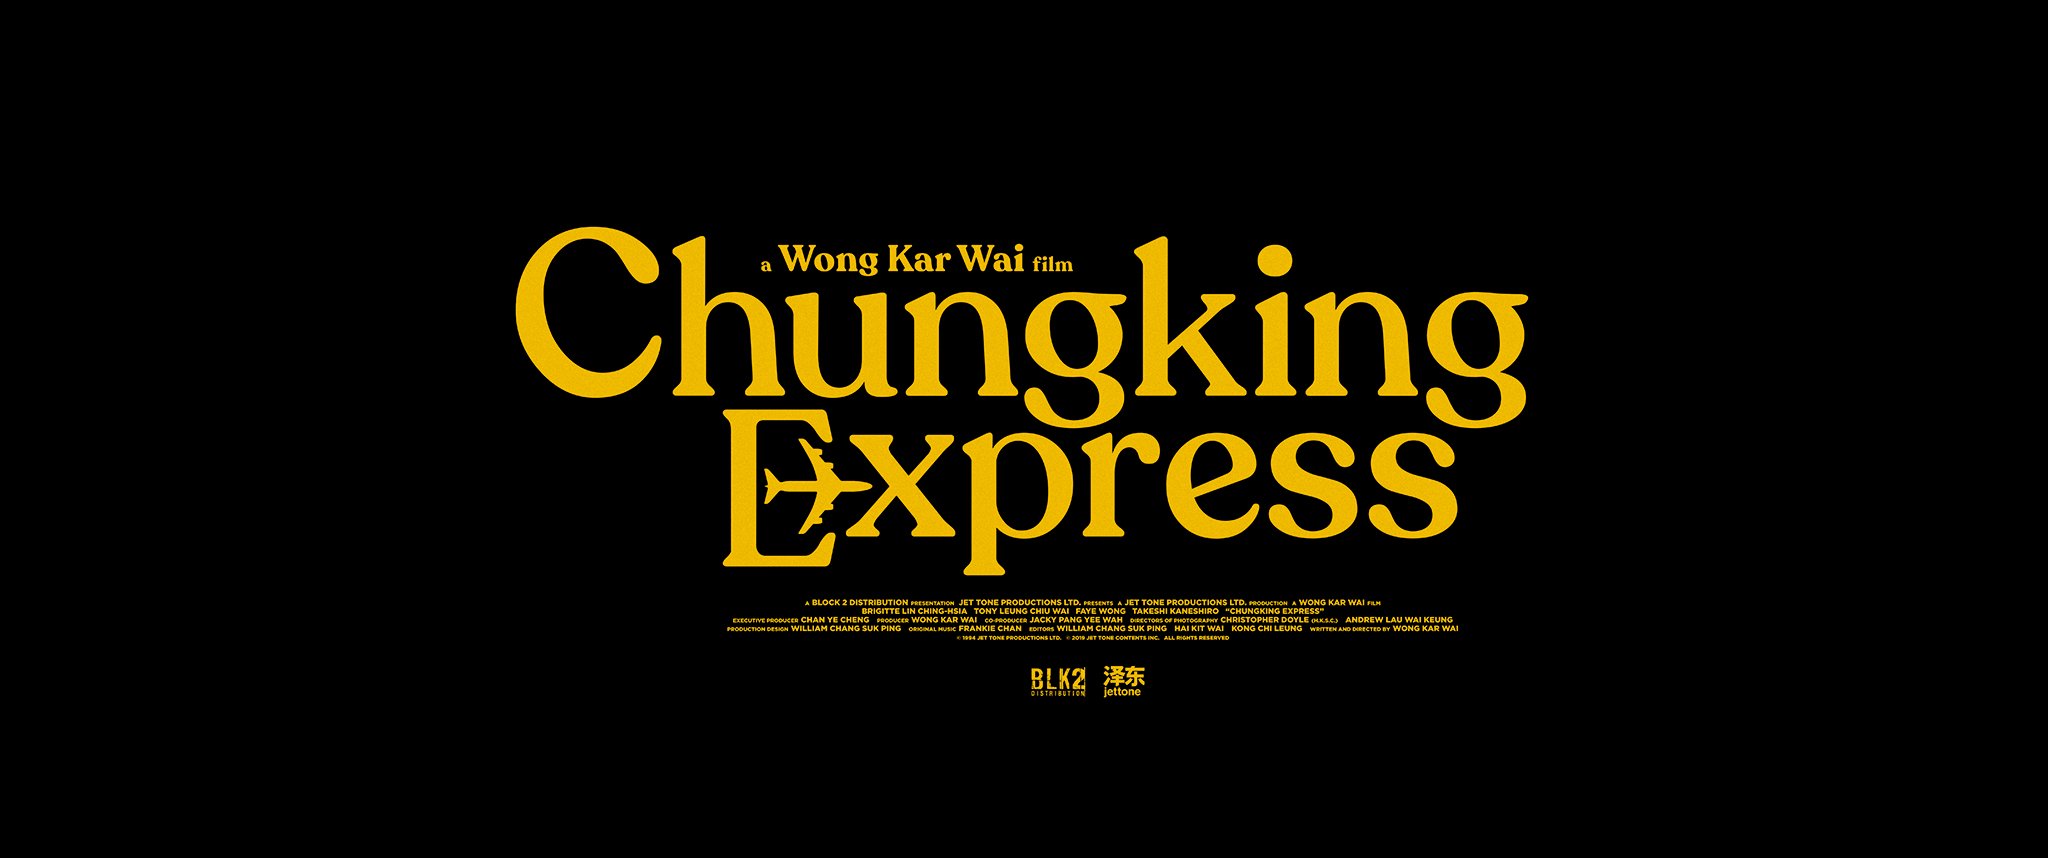 ChungkingExpress.jpg